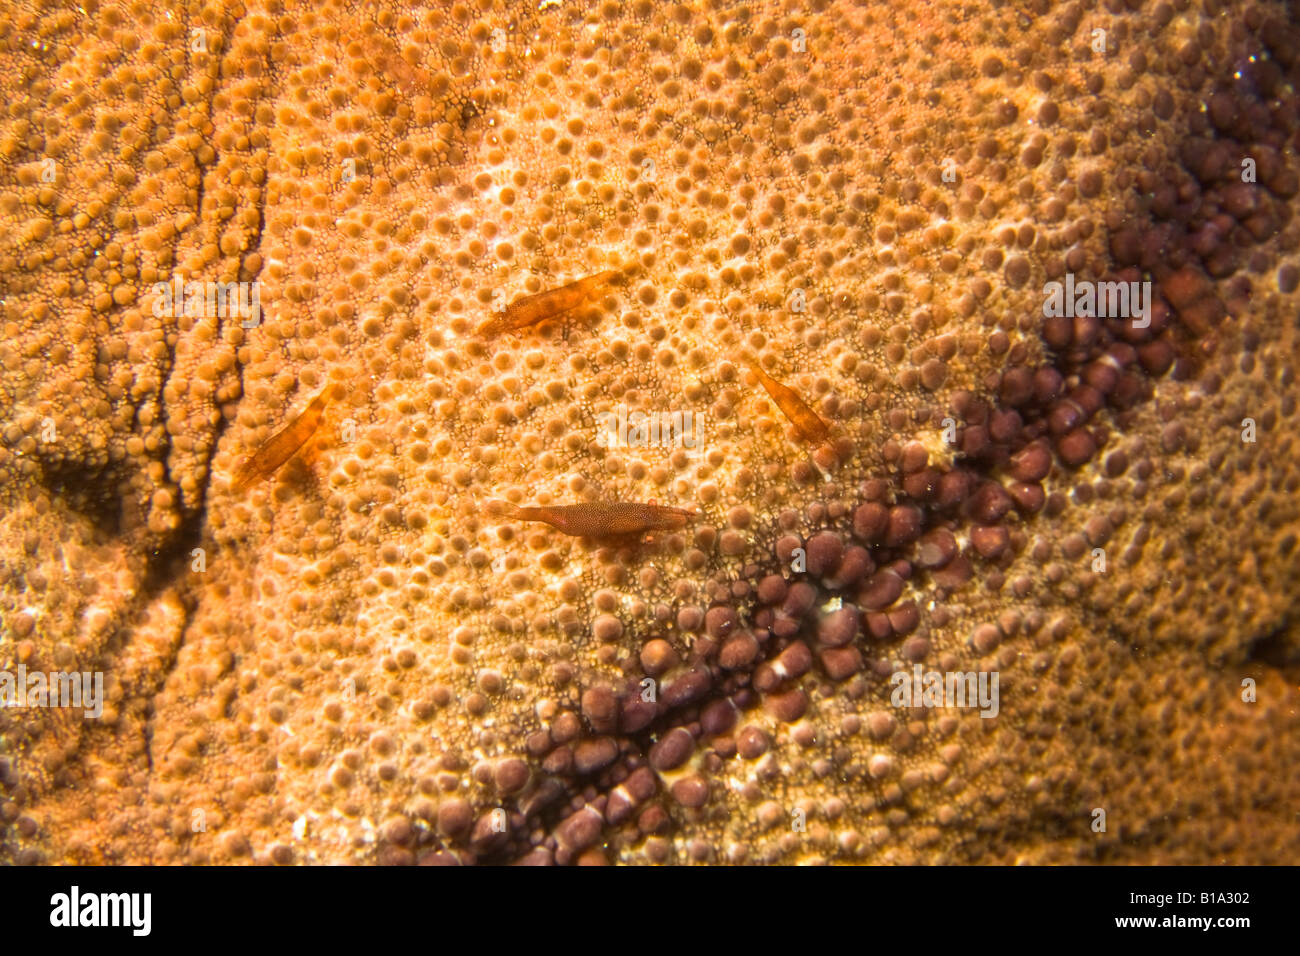 Cochin sea star with tiny shrimp Stock Photo